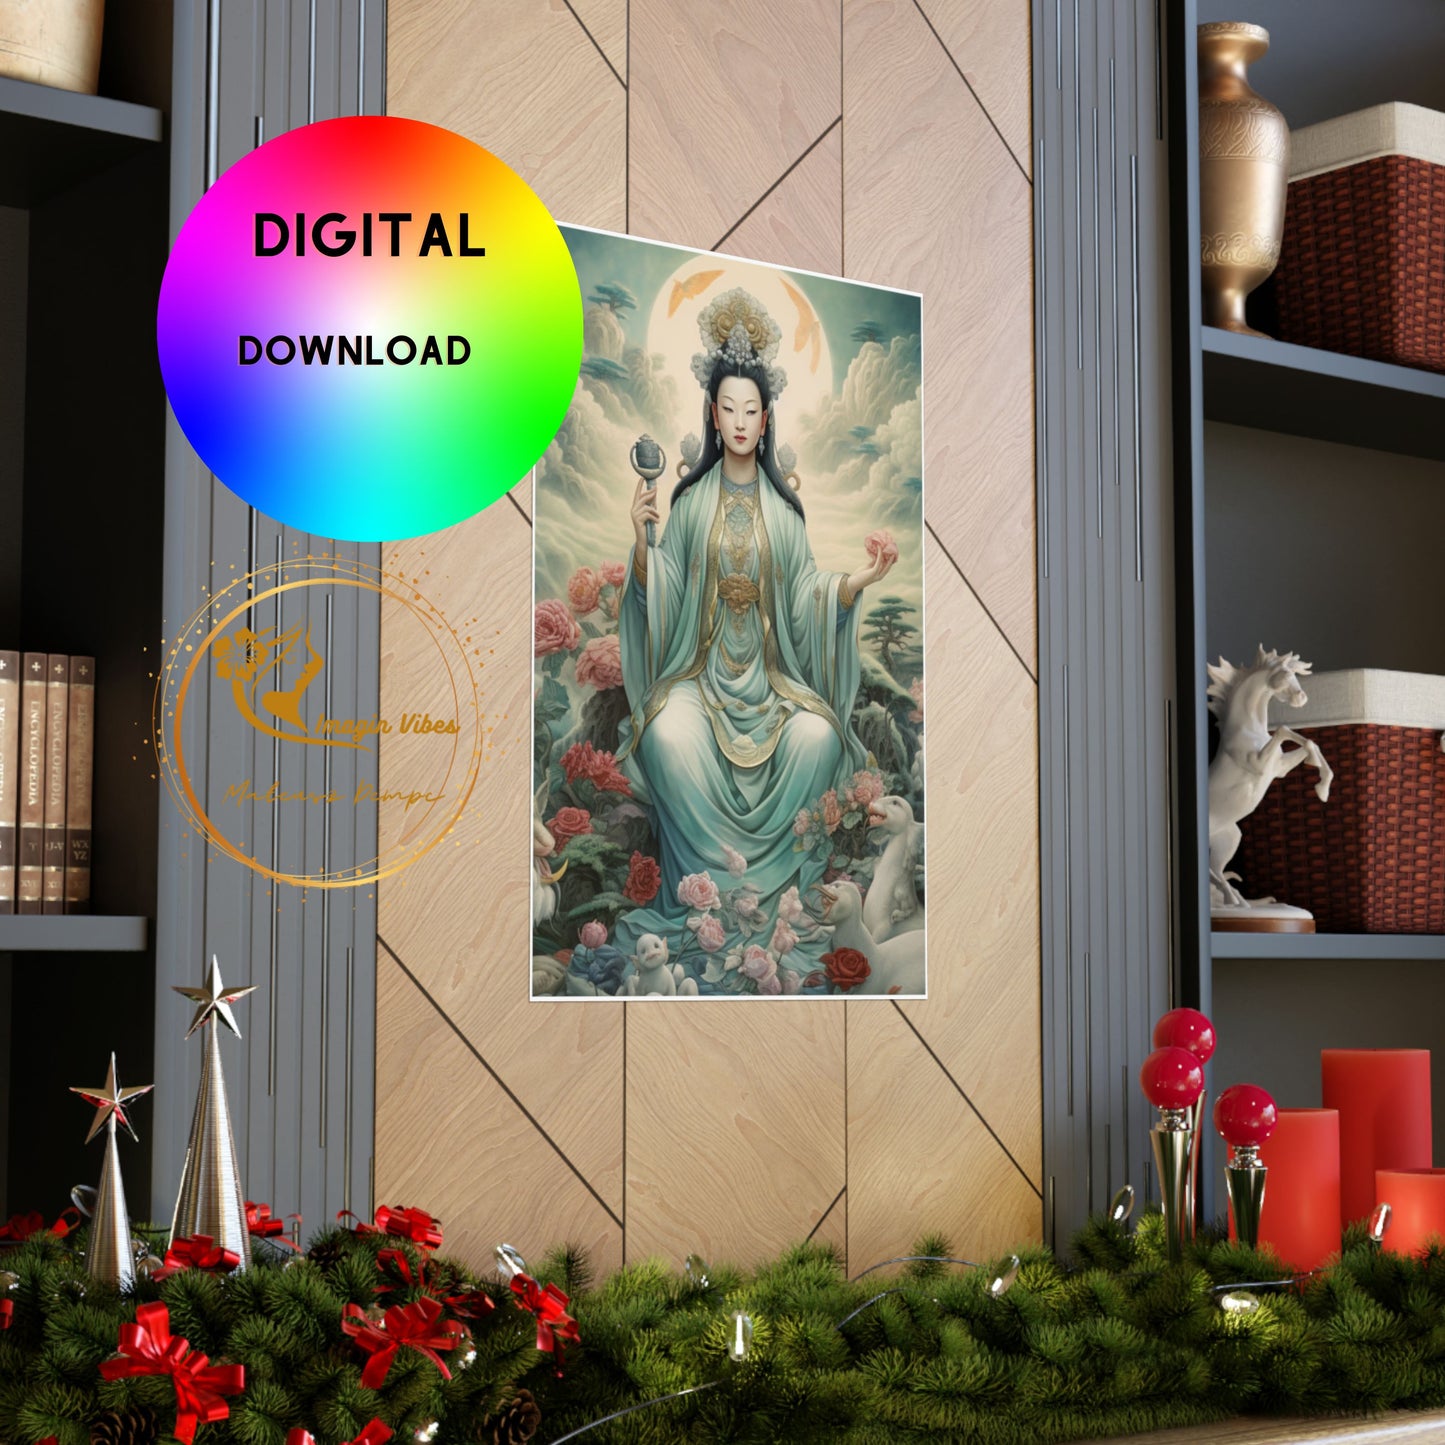 Quan Yin Wall Art - Guan Yin, Kwan Im, Kuan Yin - Goddess of Compassion. Downloadable Wall Art Poster   